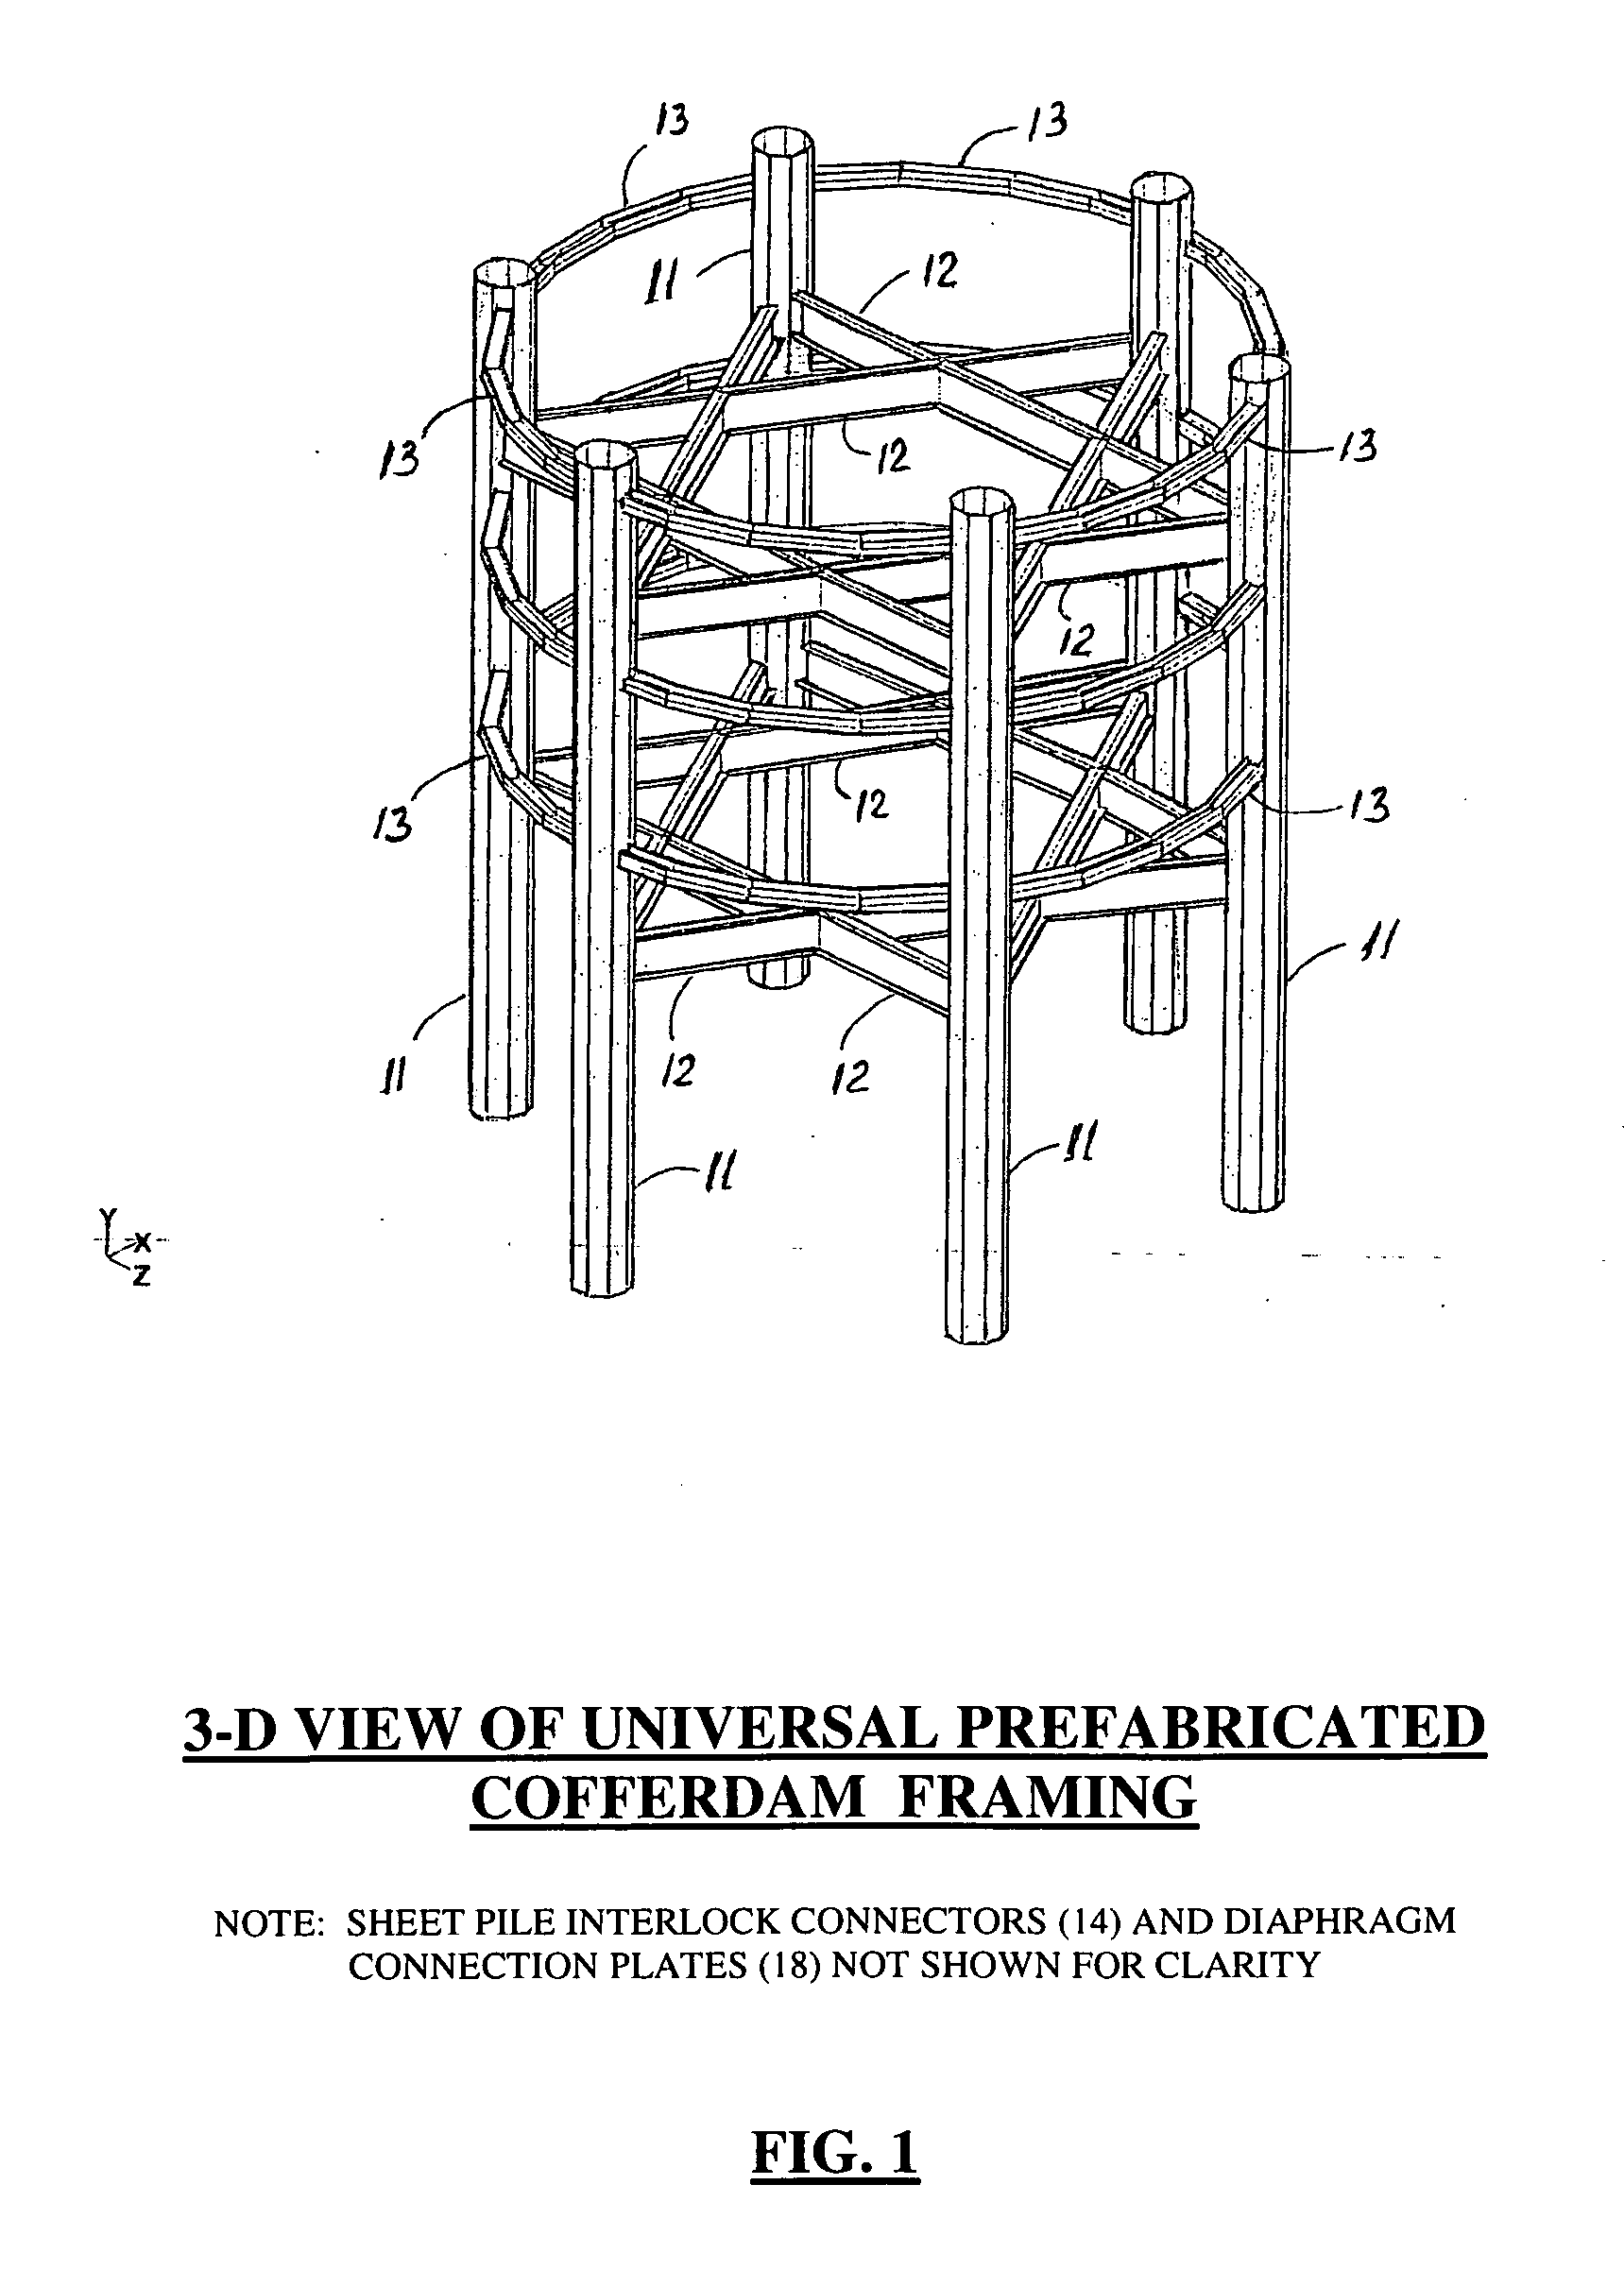 Universal Framed Cofferdam